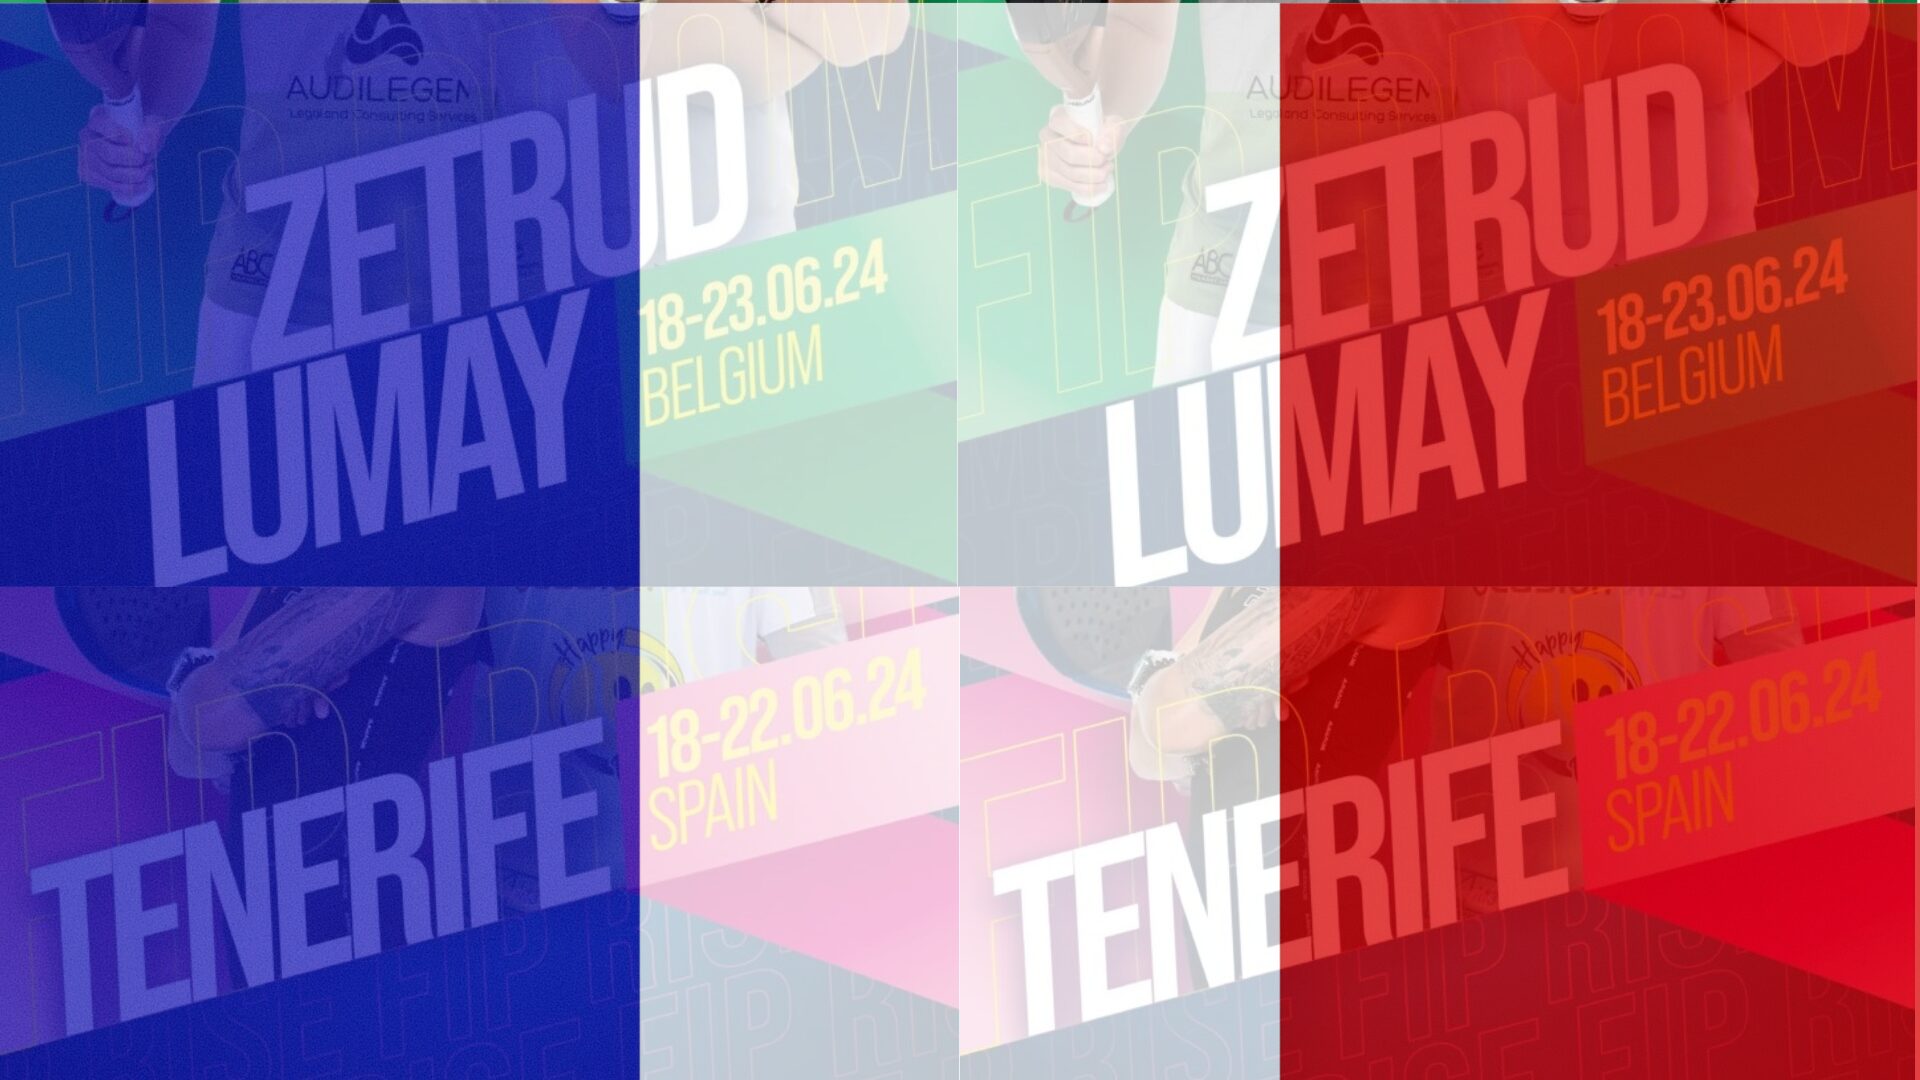 FIP Tour – 8 Français entre Tenerife et la Belgique cette semaine